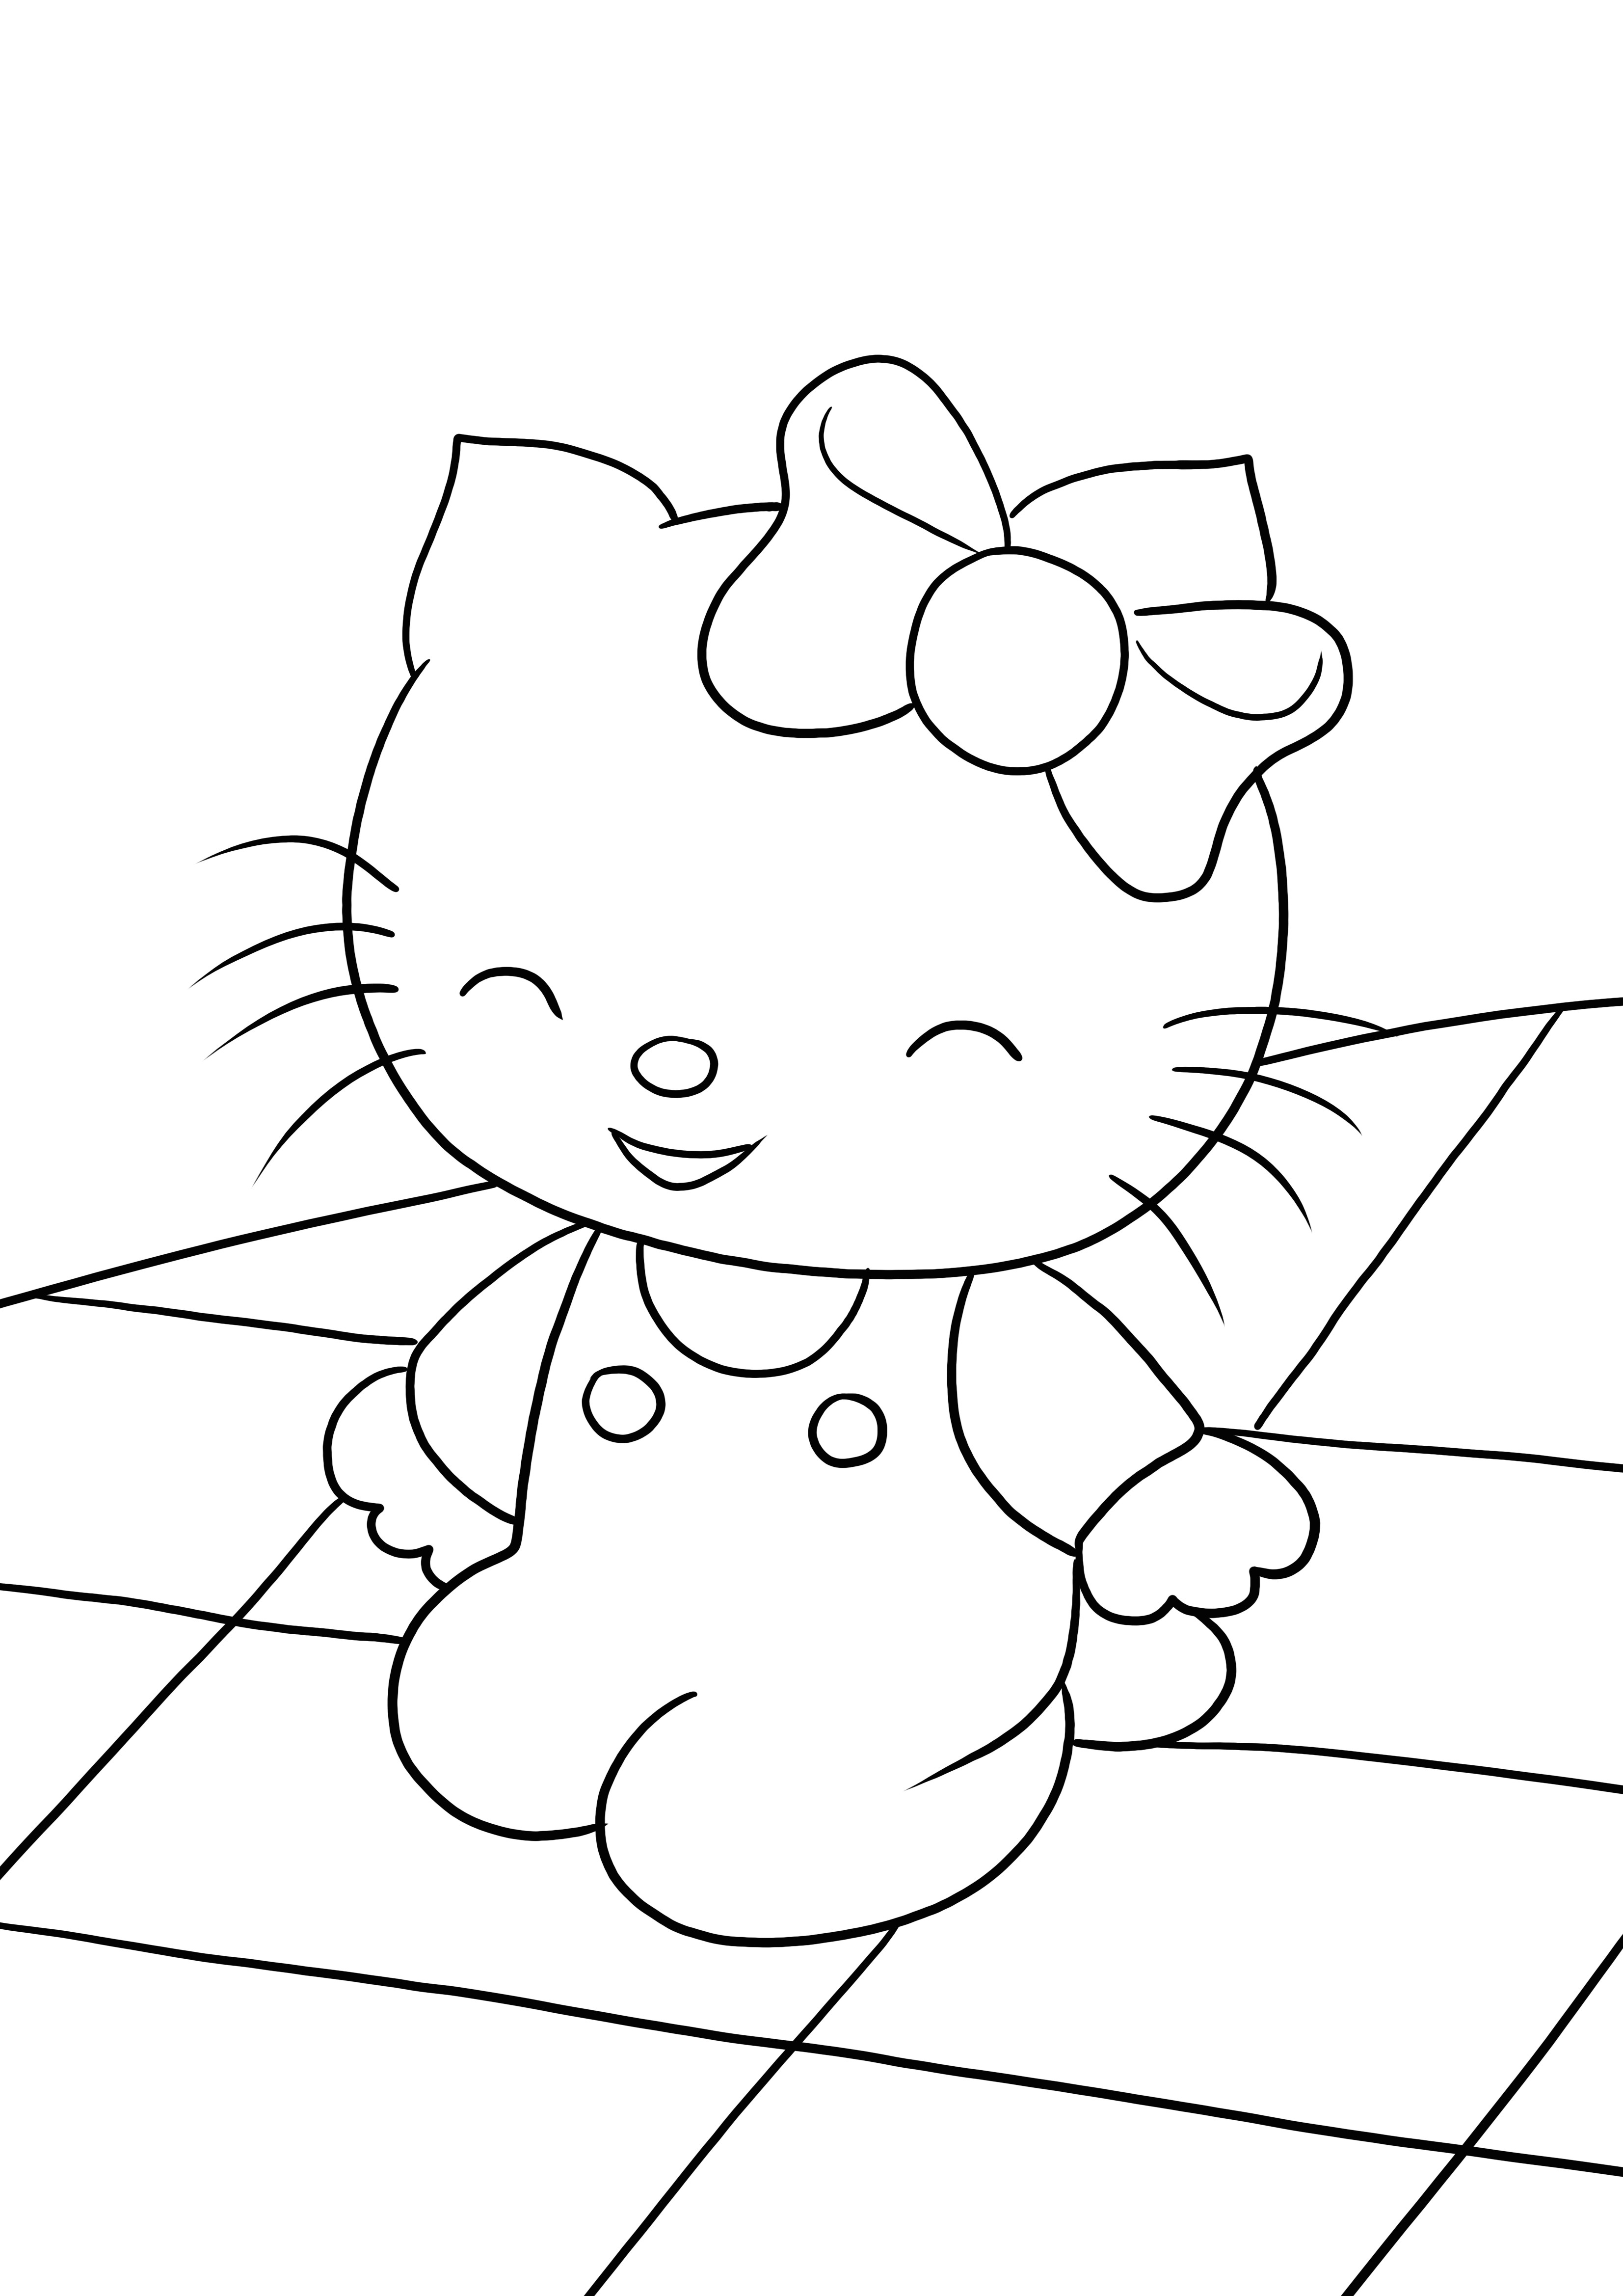 Nasza Happy Hello Kitty jest tutaj i jest gotowa do bezpłatnego pokolorowania i wydrukowania